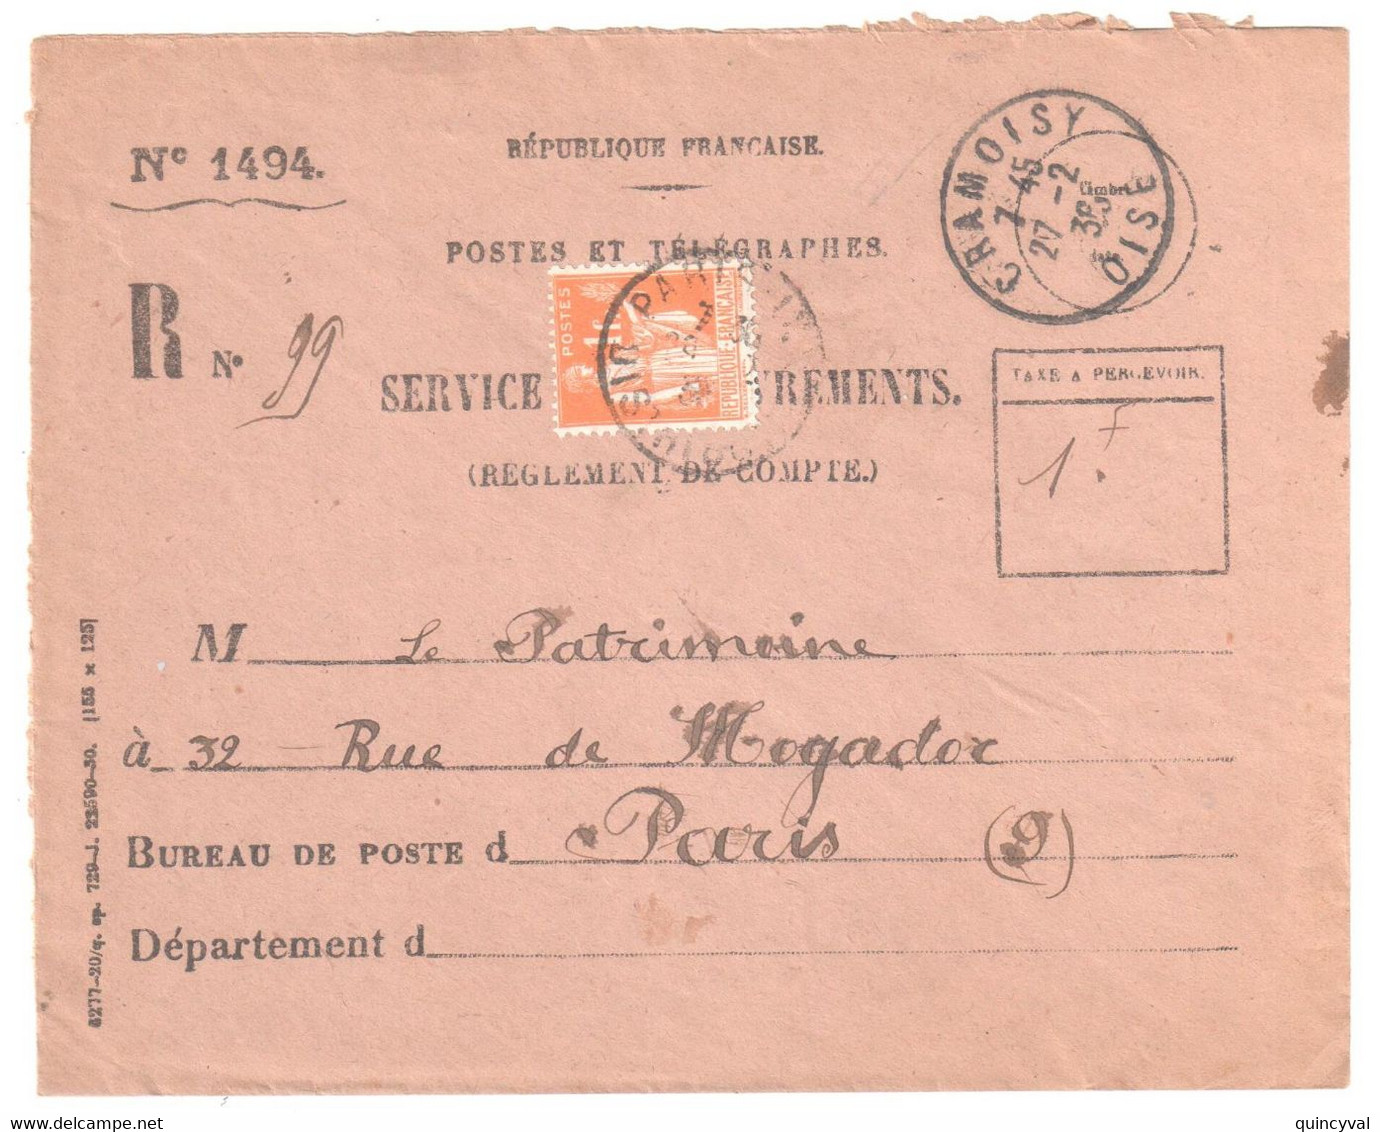 CRAMOISY Oise Recouvrement Formule 1494 Entière Yv 286 1F Paix Orange Utilisé Pour Taxe Ob 27 2 1936 - Briefe U. Dokumente